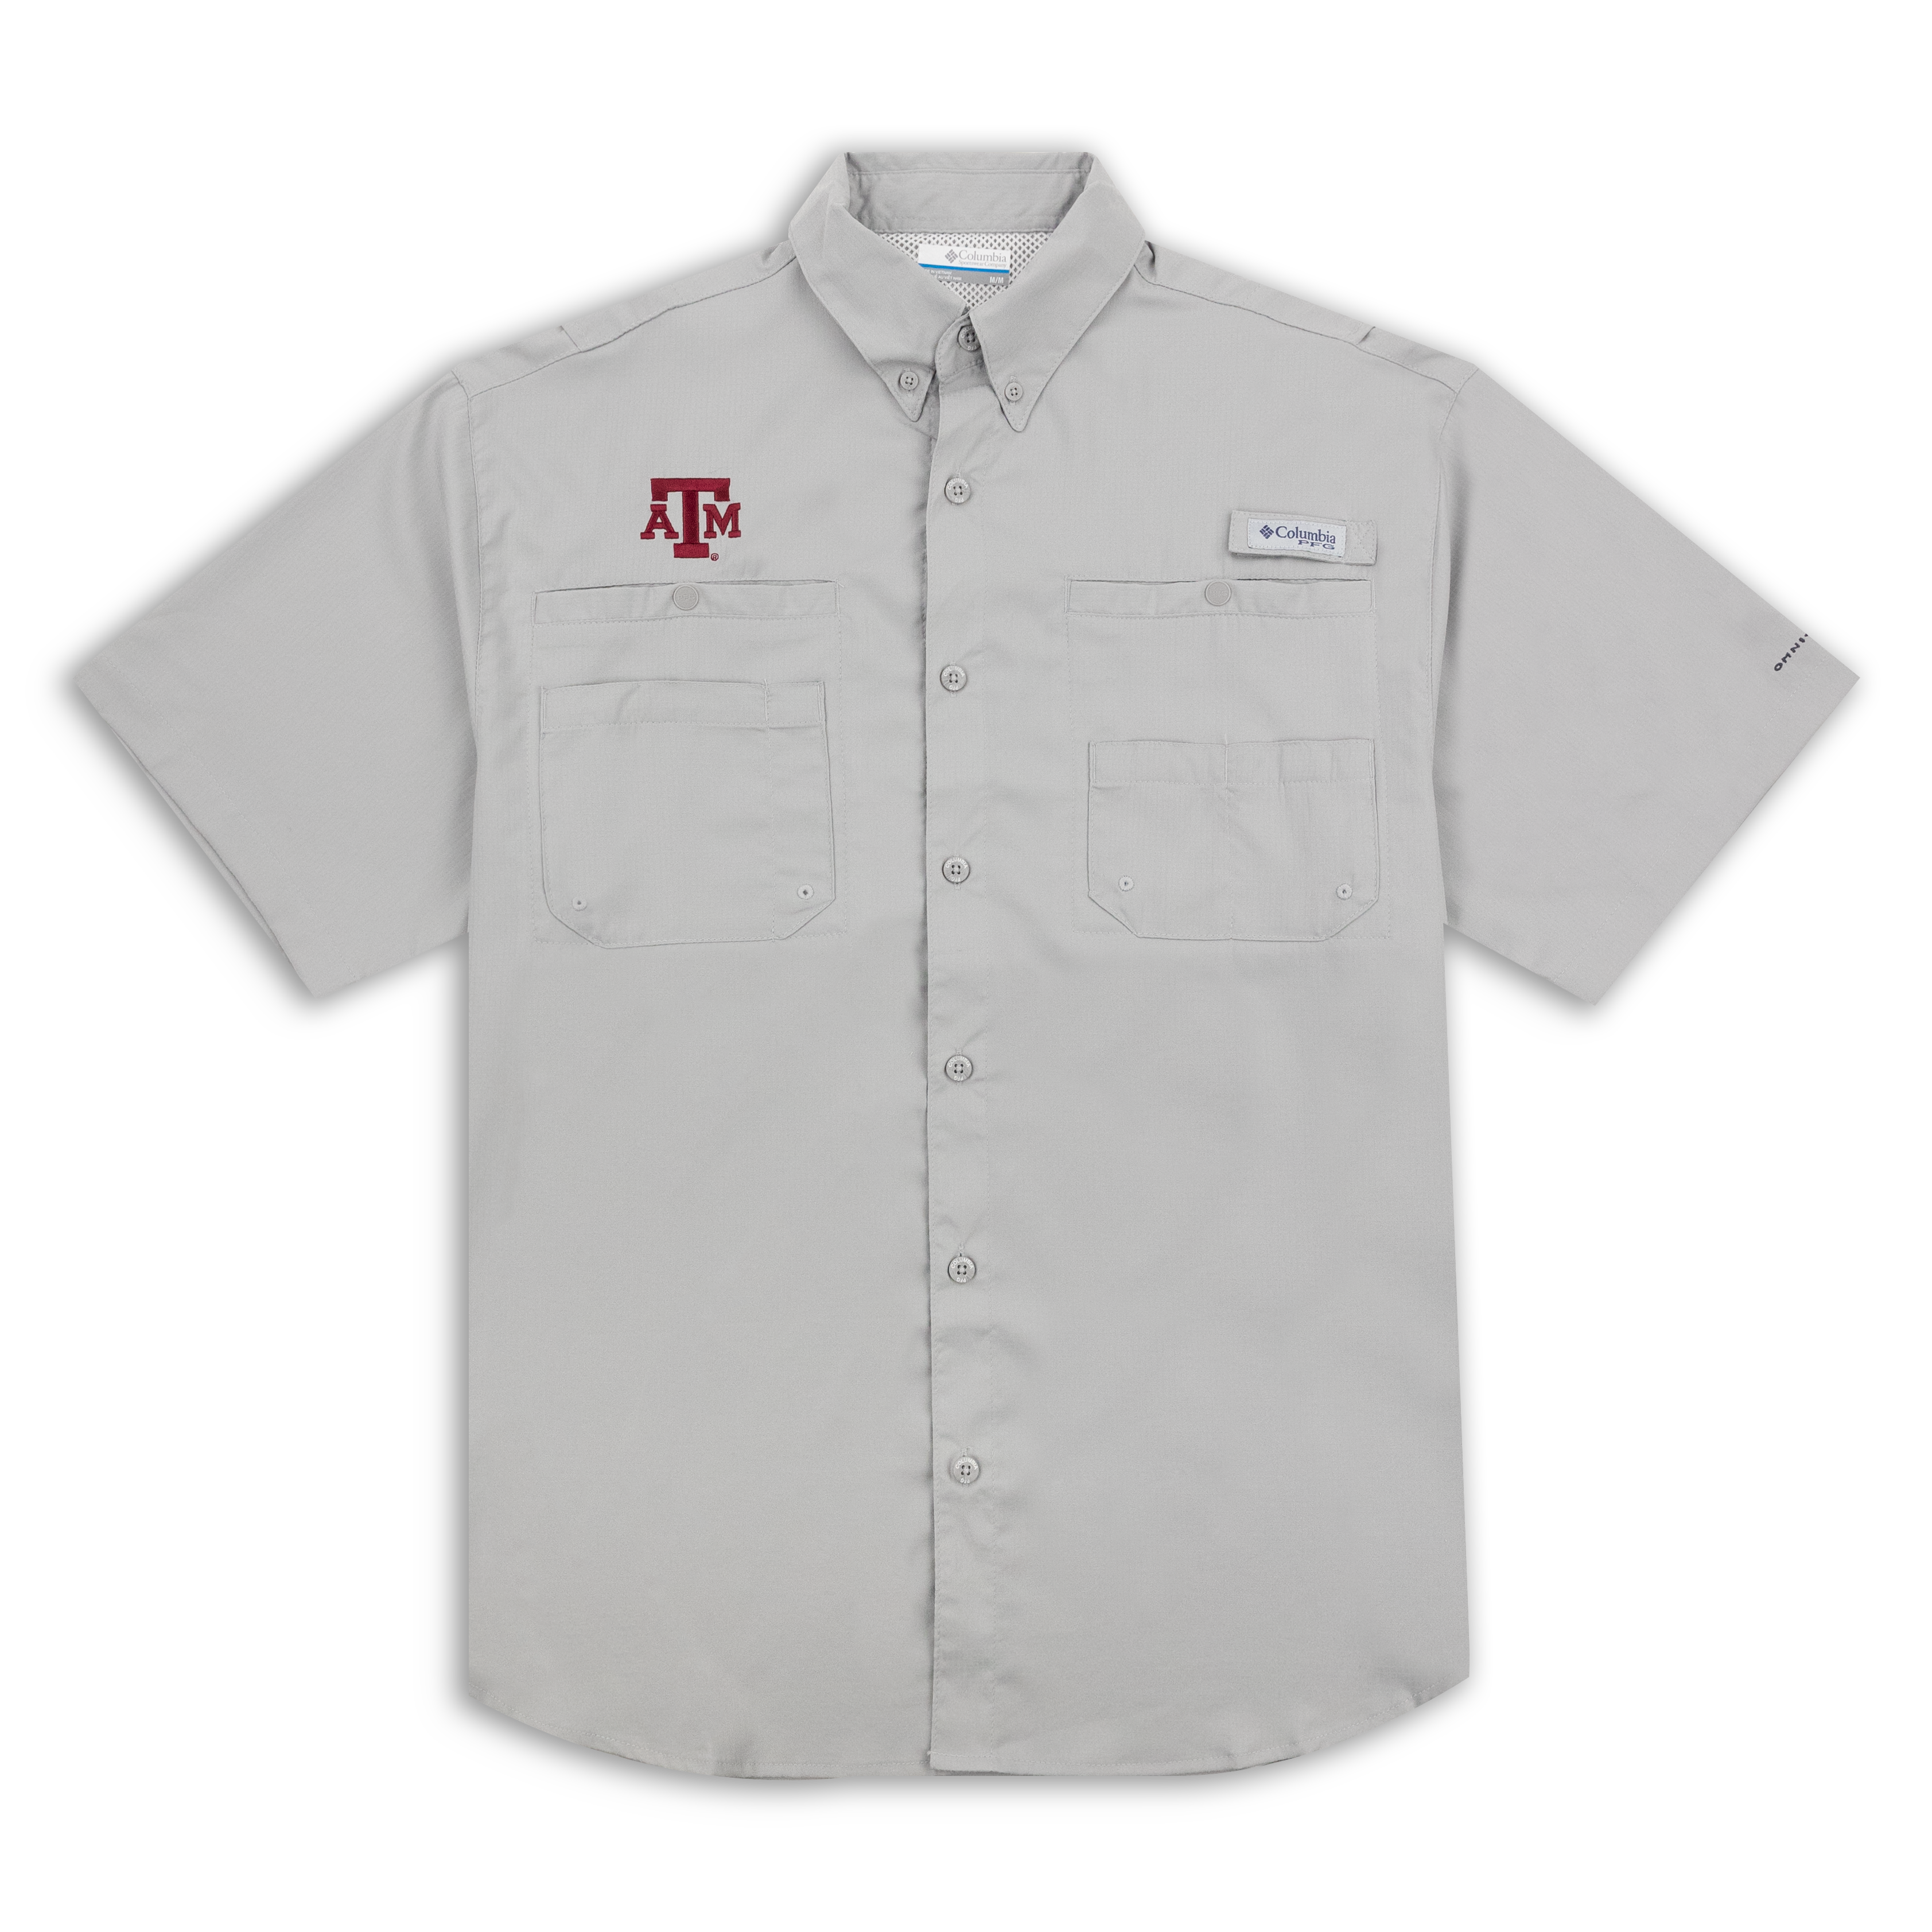 Columbia Tamiami Polo Shirt - White - Size: M